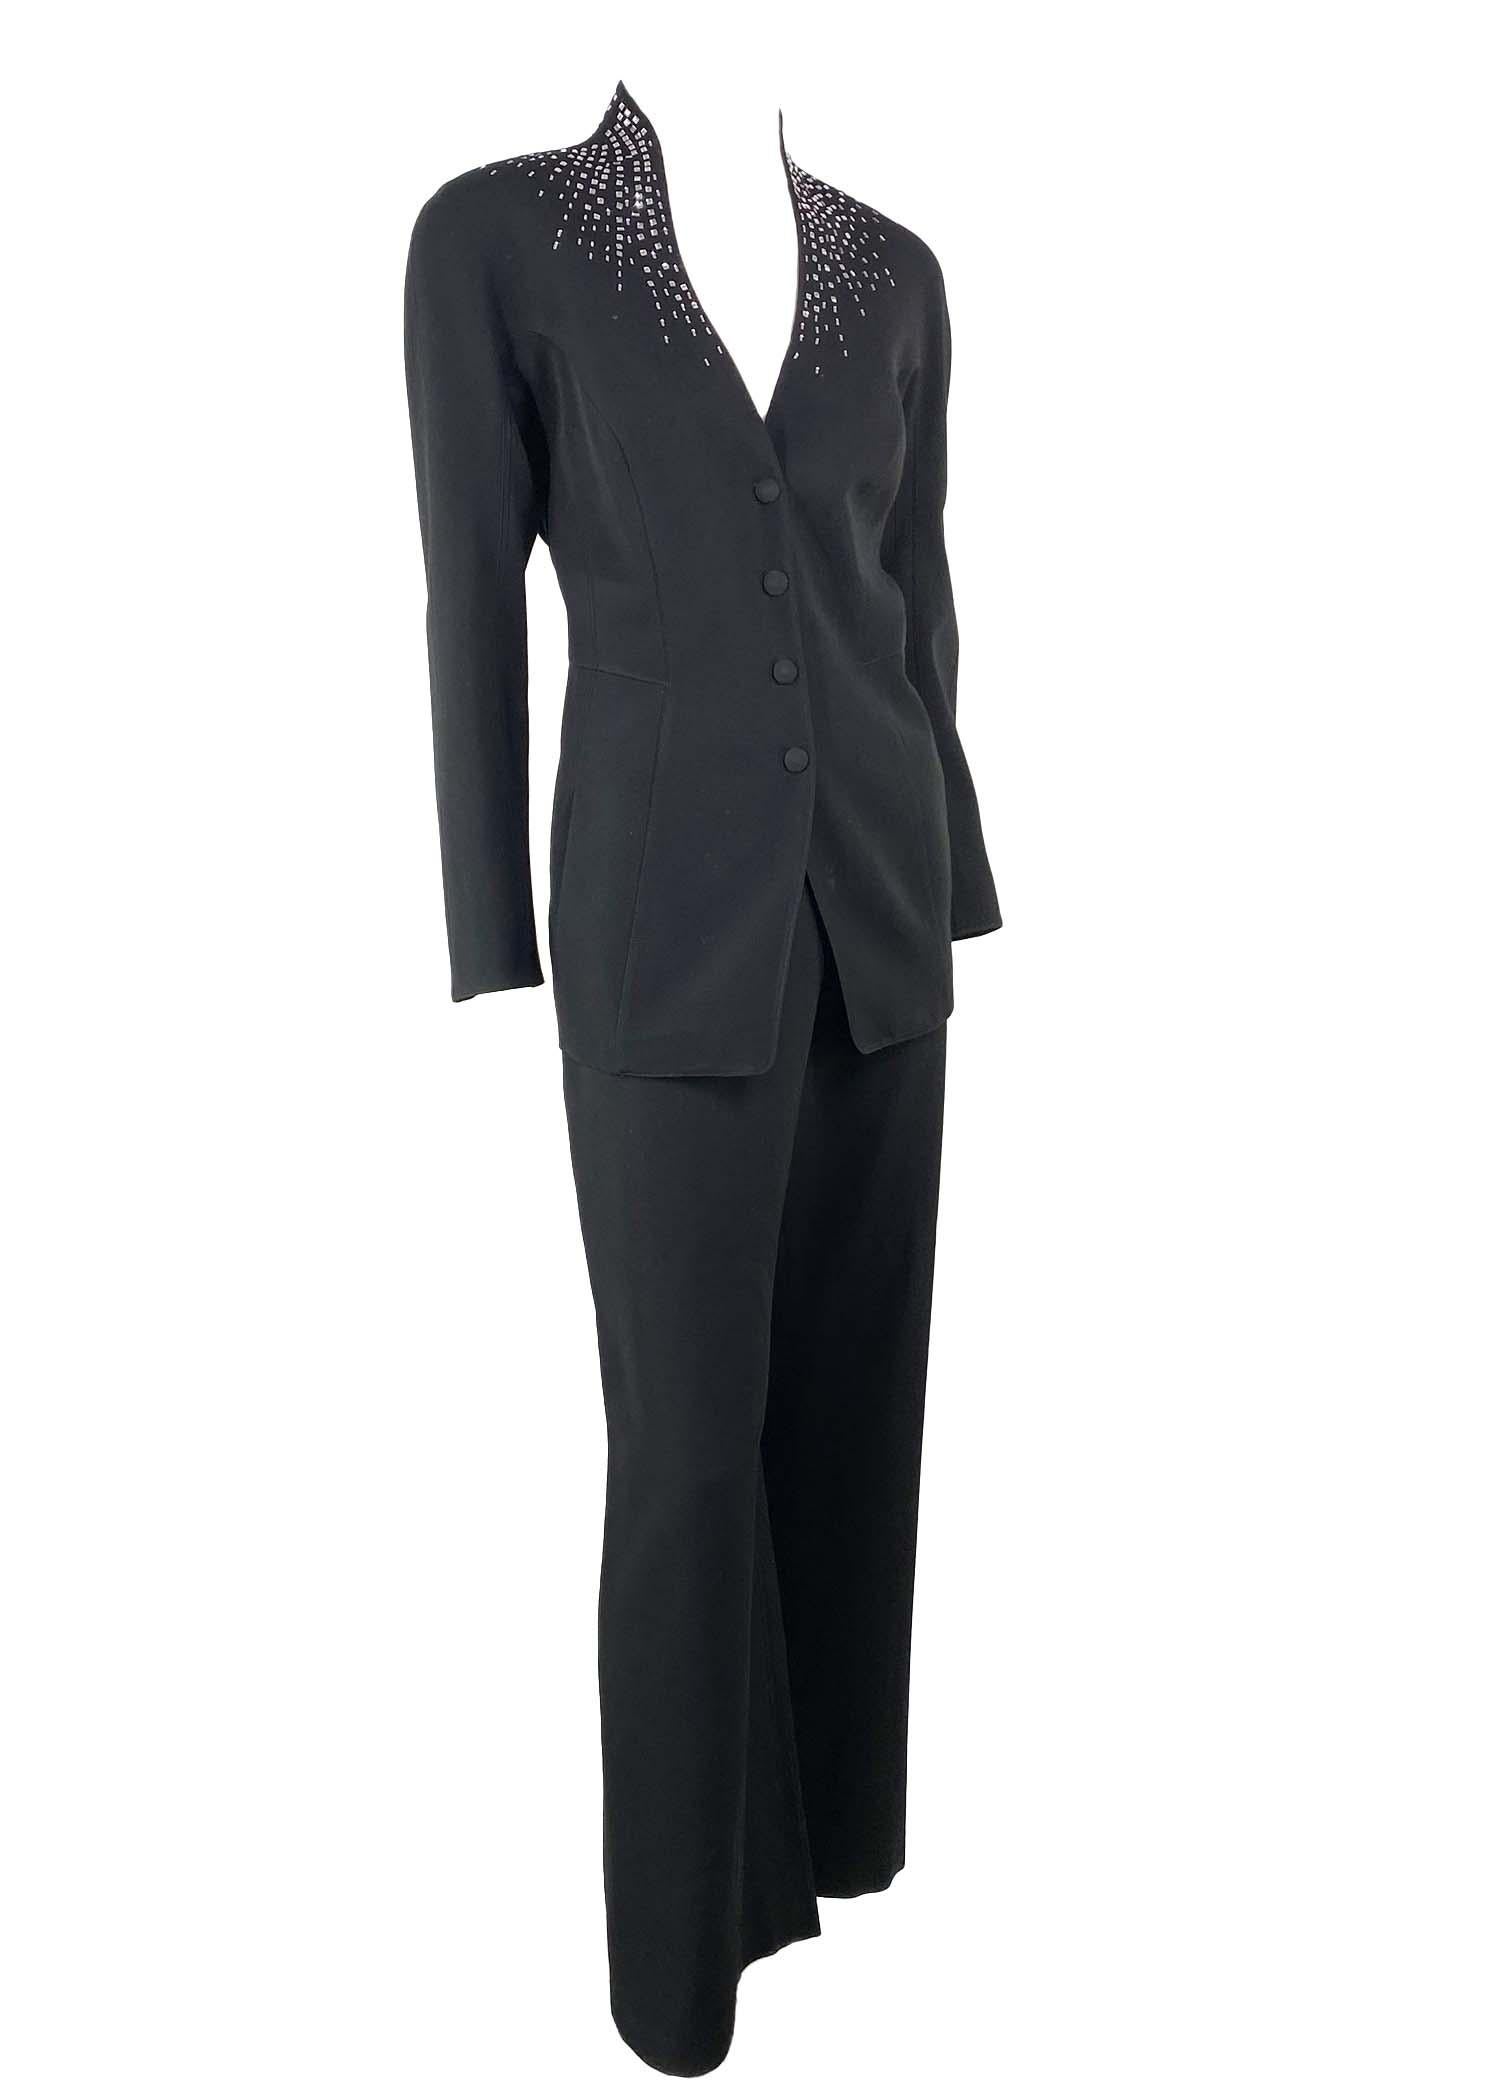 Présentation d'un tailleur pantalon Thierry Mugler en strass, conçu par Manfred Mugler. Datant des années 1990, ce costume présente une conception et une confection magistrales. Le blazer est doté d'un col montant, de fermetures à pression et de